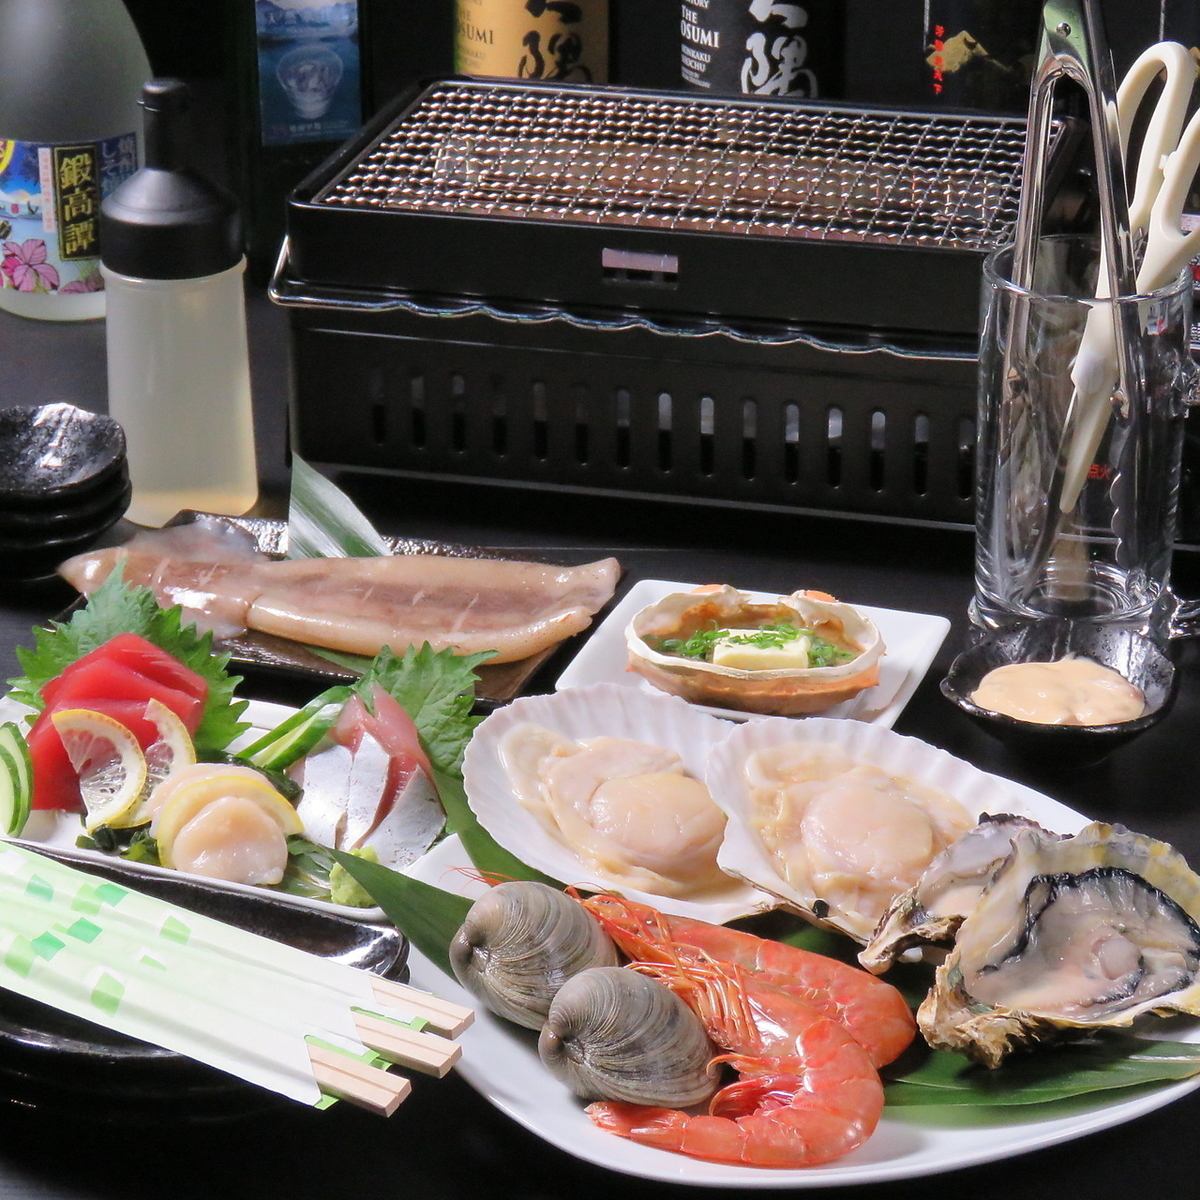 【히노 역에서 도보 5 분】 제철 산지 직송 신선한 해산물을 즐길 수 있습니다 ♪ 인터넷 예약 접수 중